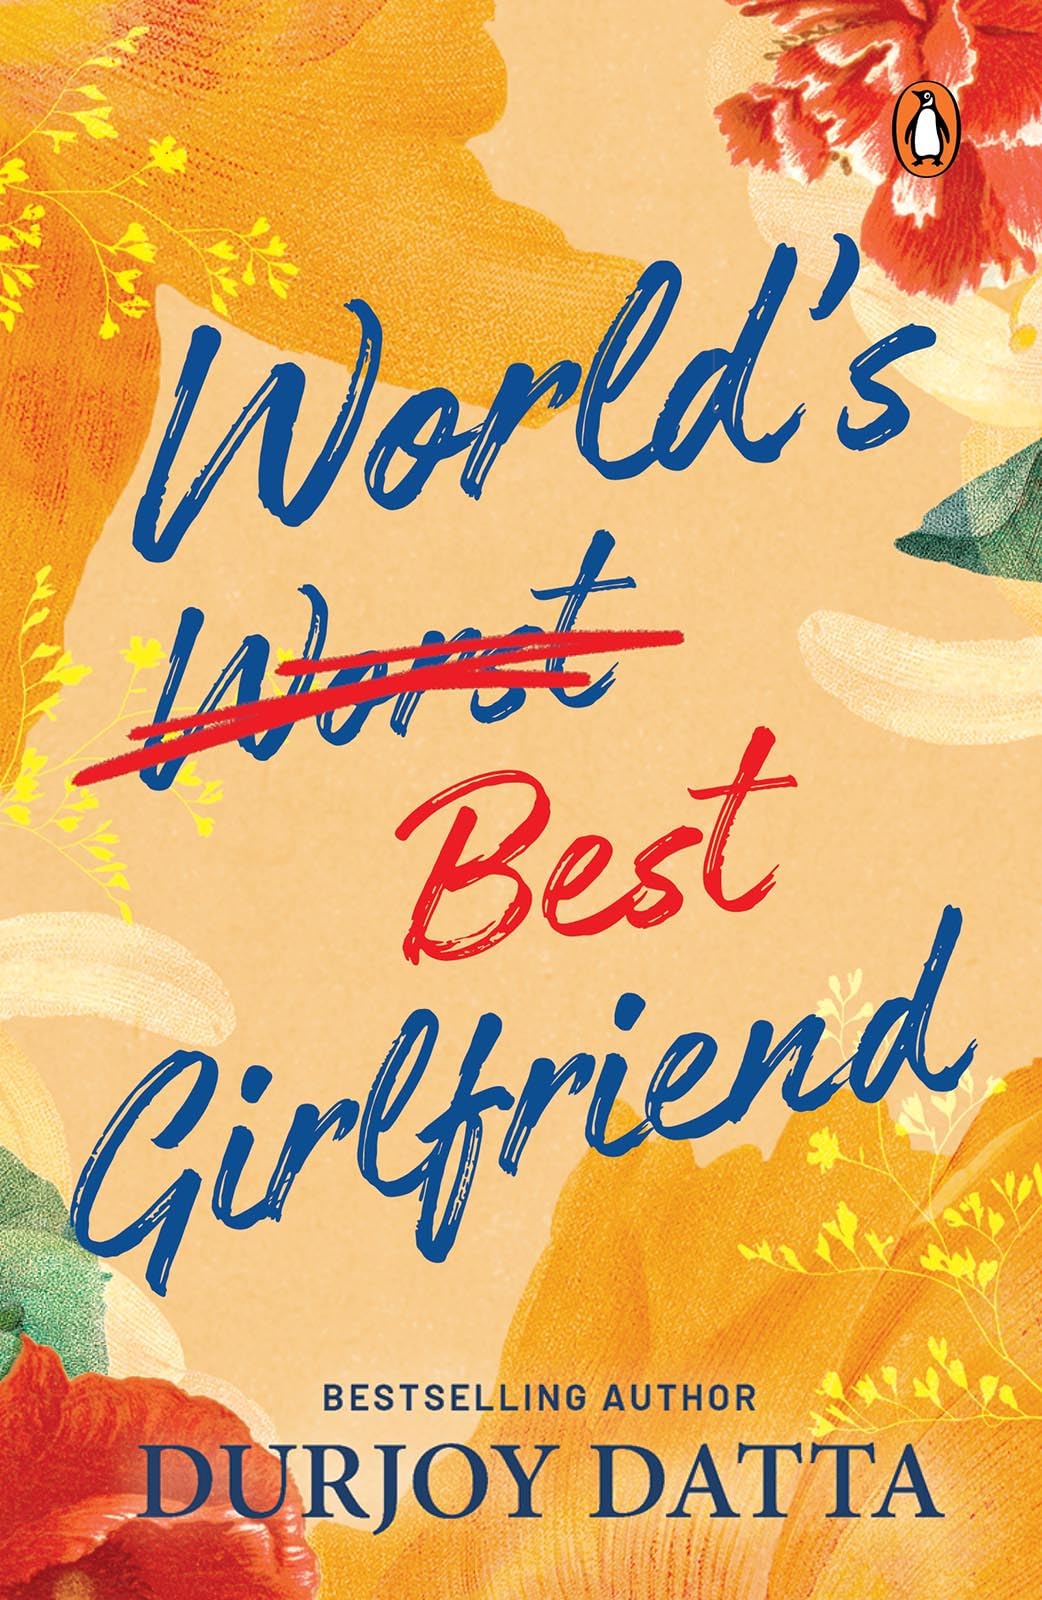 World's Best Girlfriend
Book by Durjoy Datta